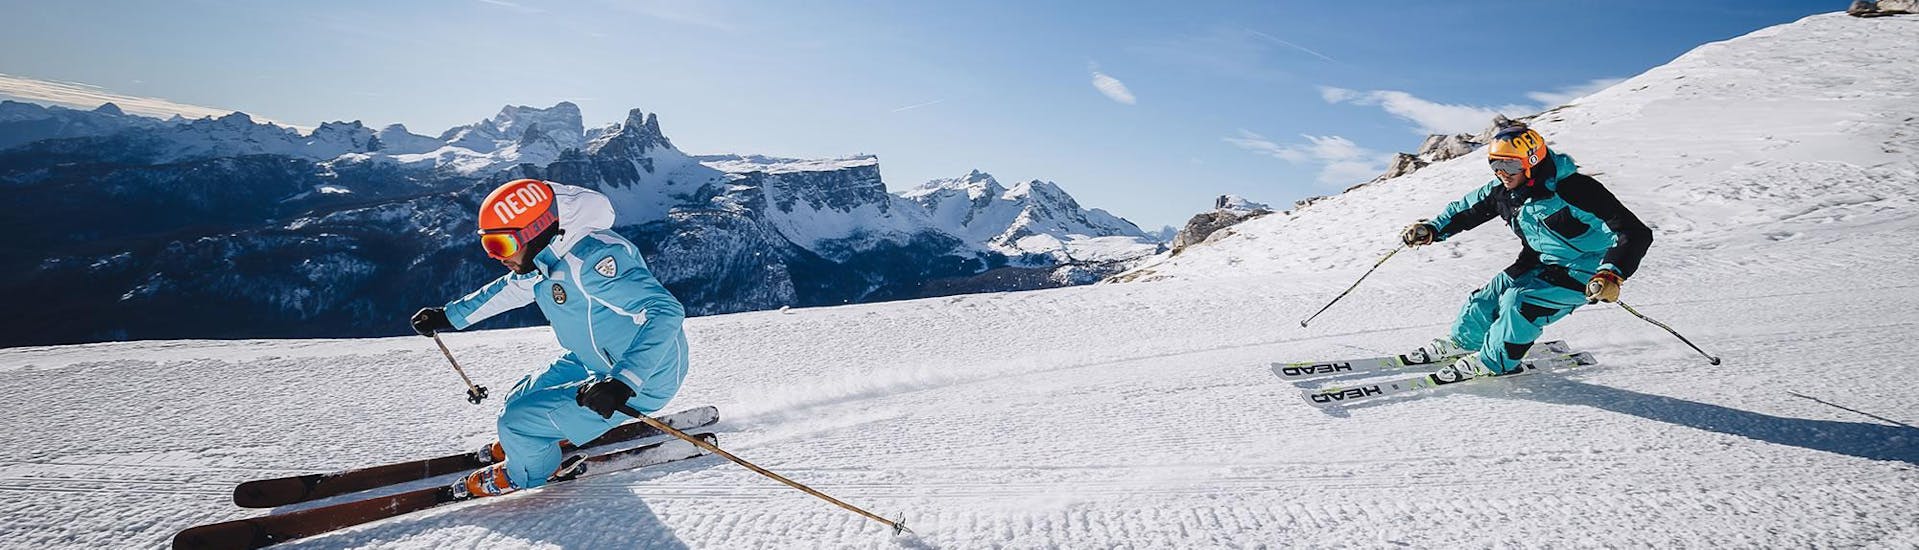 Un maestro di sci sta aprendo una delle piste del comprensorio sciistico di Cortina d'Amezzo durante una delle lezioni private di sci per adulti - VIP della scuola di sci Scuola di Sci e Snowboard Cristallo Cortina.